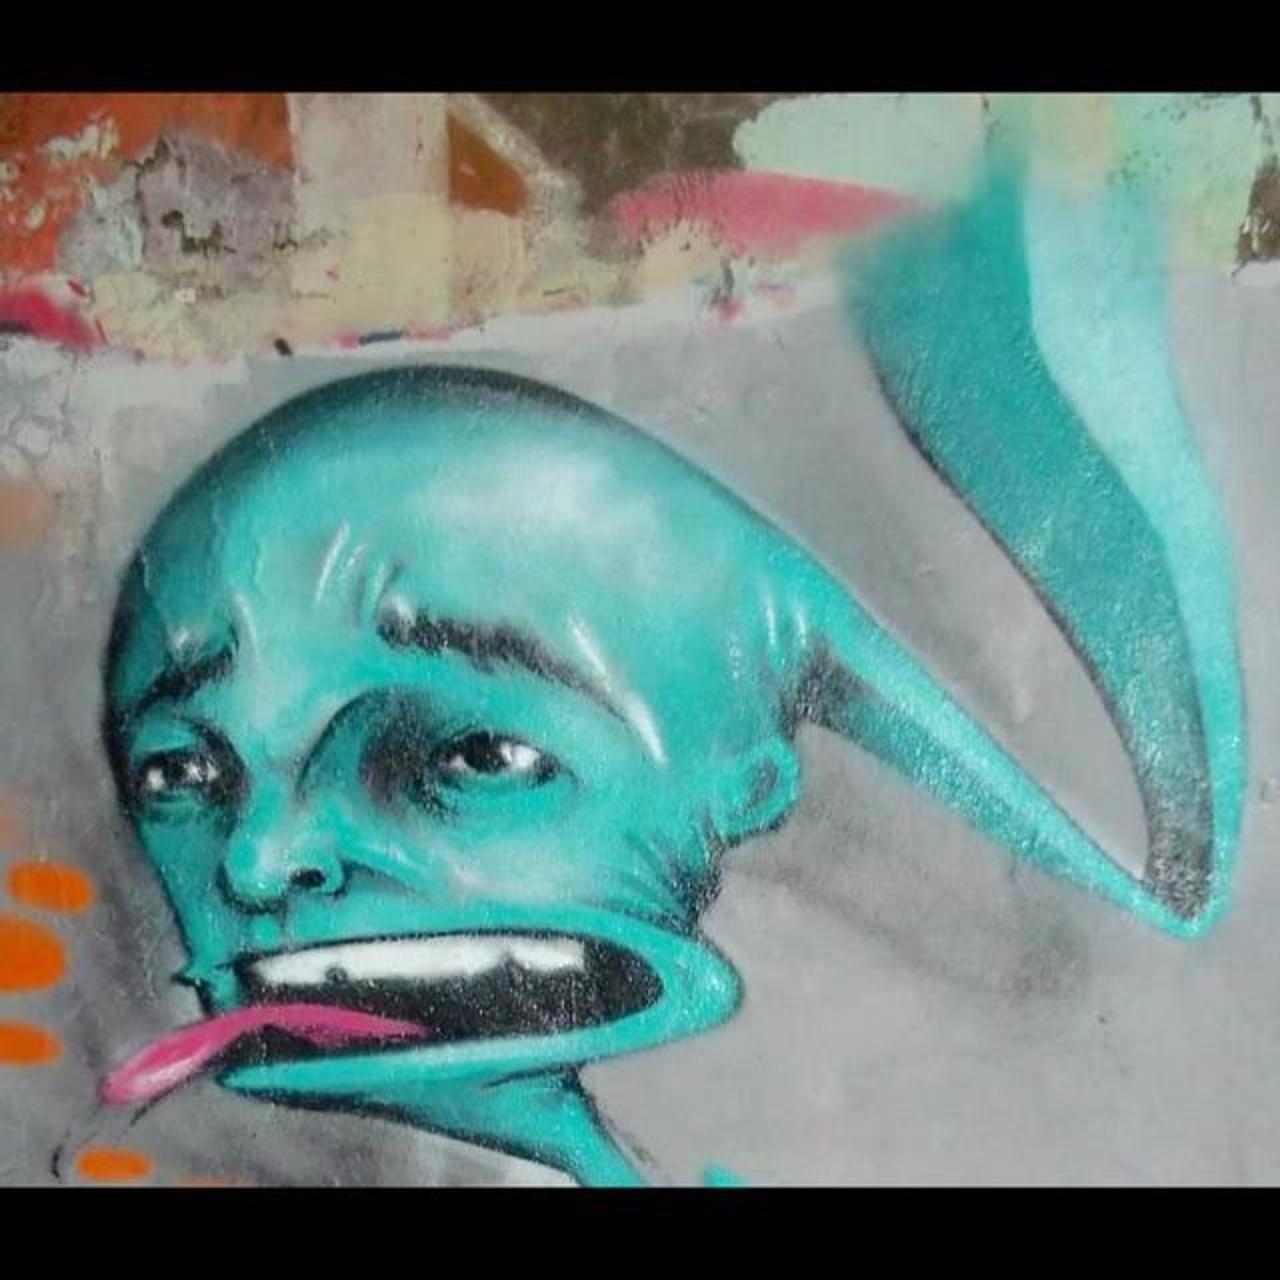 Na na na na naaa #catchmeifucan #trip #spraypaint #art #artist #khush #imagination #creation #graffiti #khushtrip … http://t.co/vbODqjjgxC